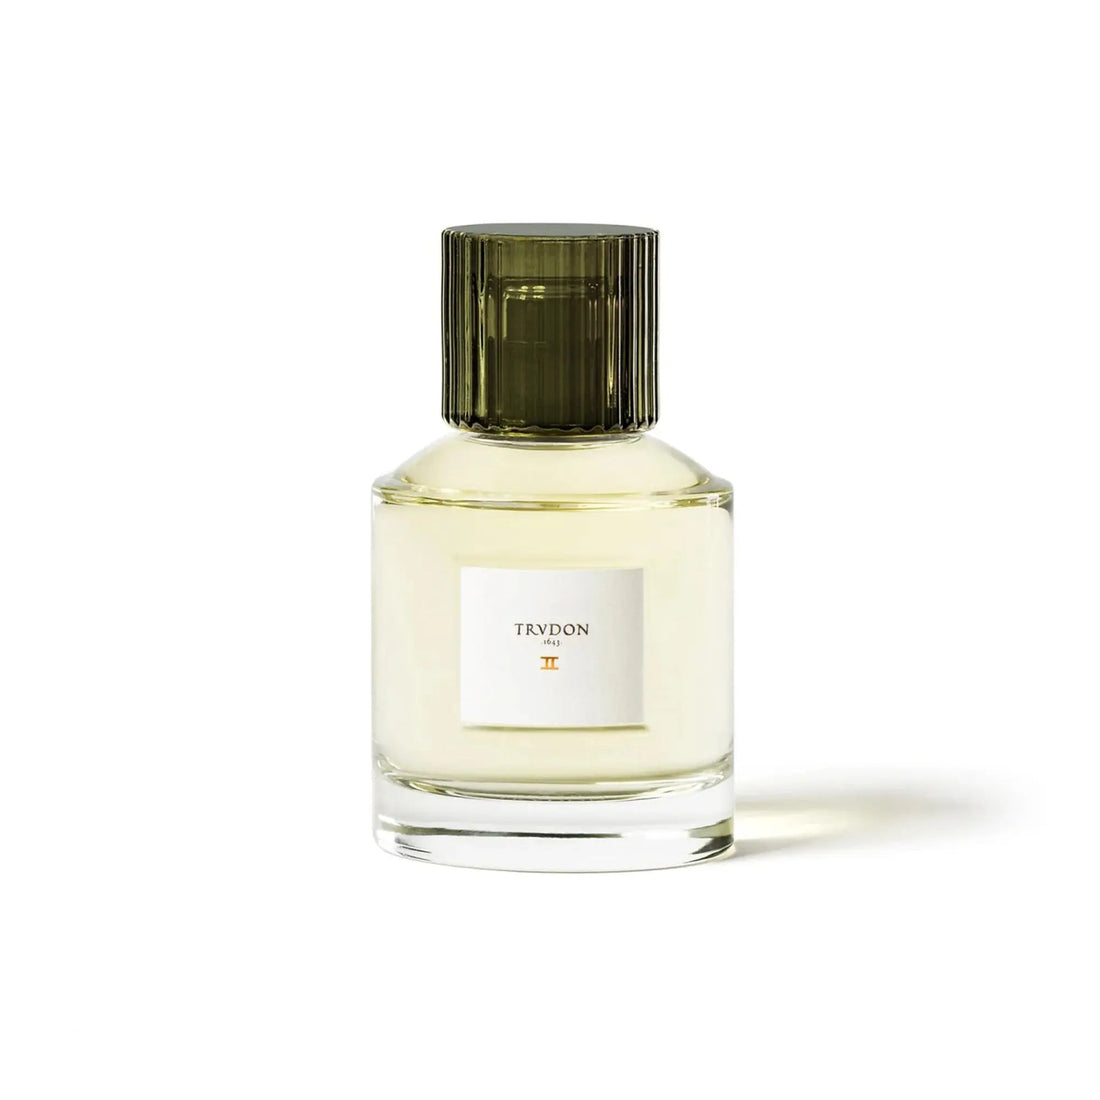 Trudon Deux eau de parfum - 100 ml